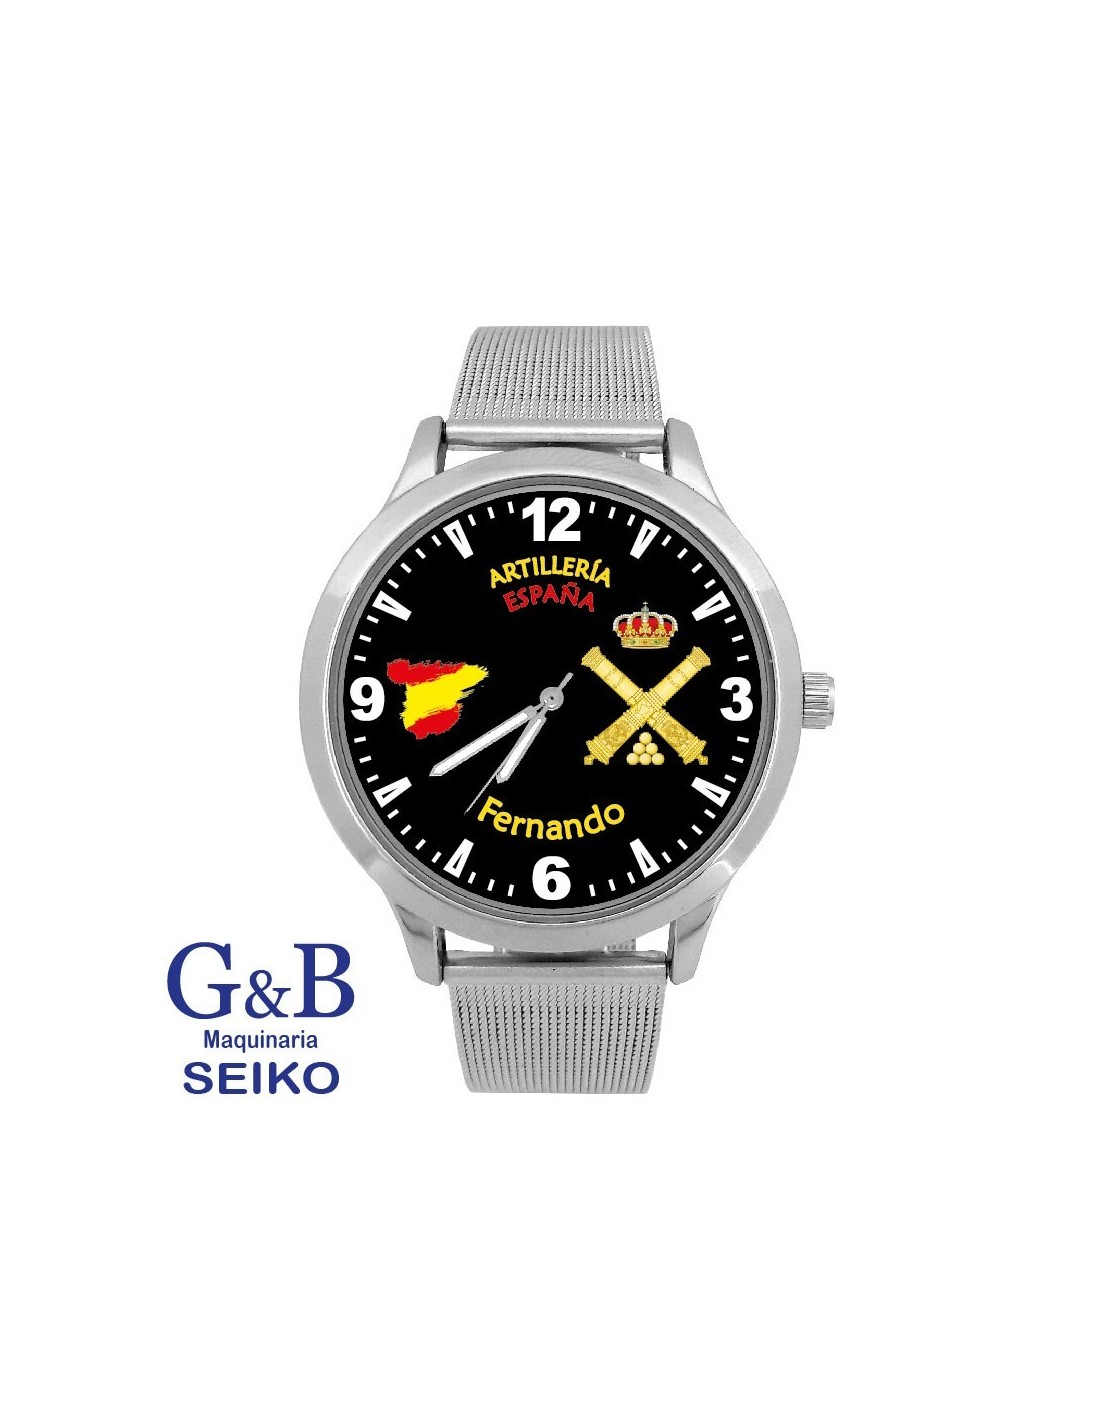 Tierra Intenso Polvo Reloj marca G&B con correa de malla de acero. Personalizado Militar.